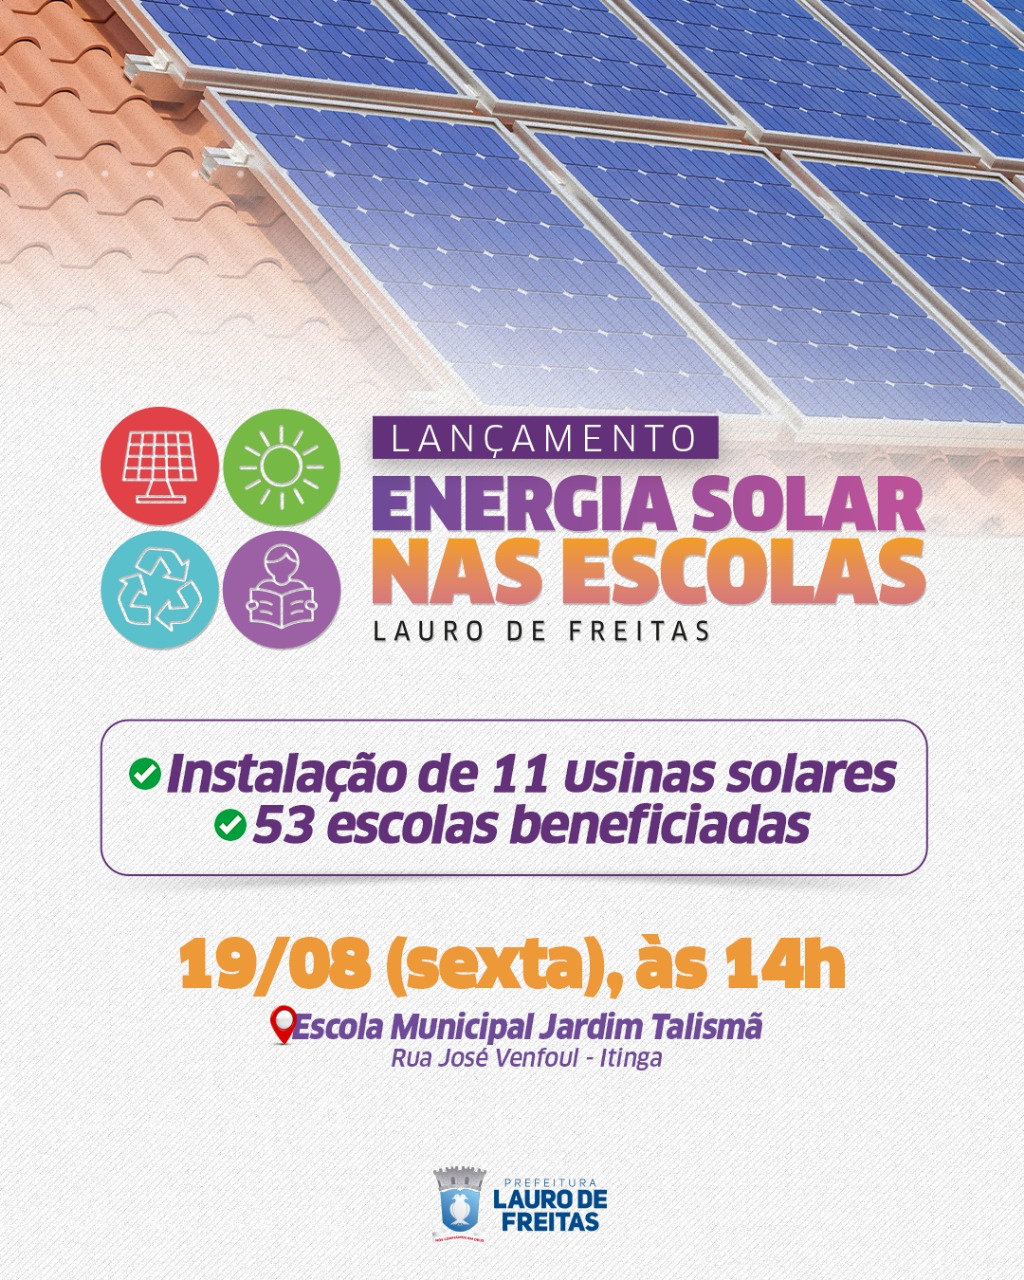 Energia solar será implantada em 53 escolas municipais de Lauro de Freitas